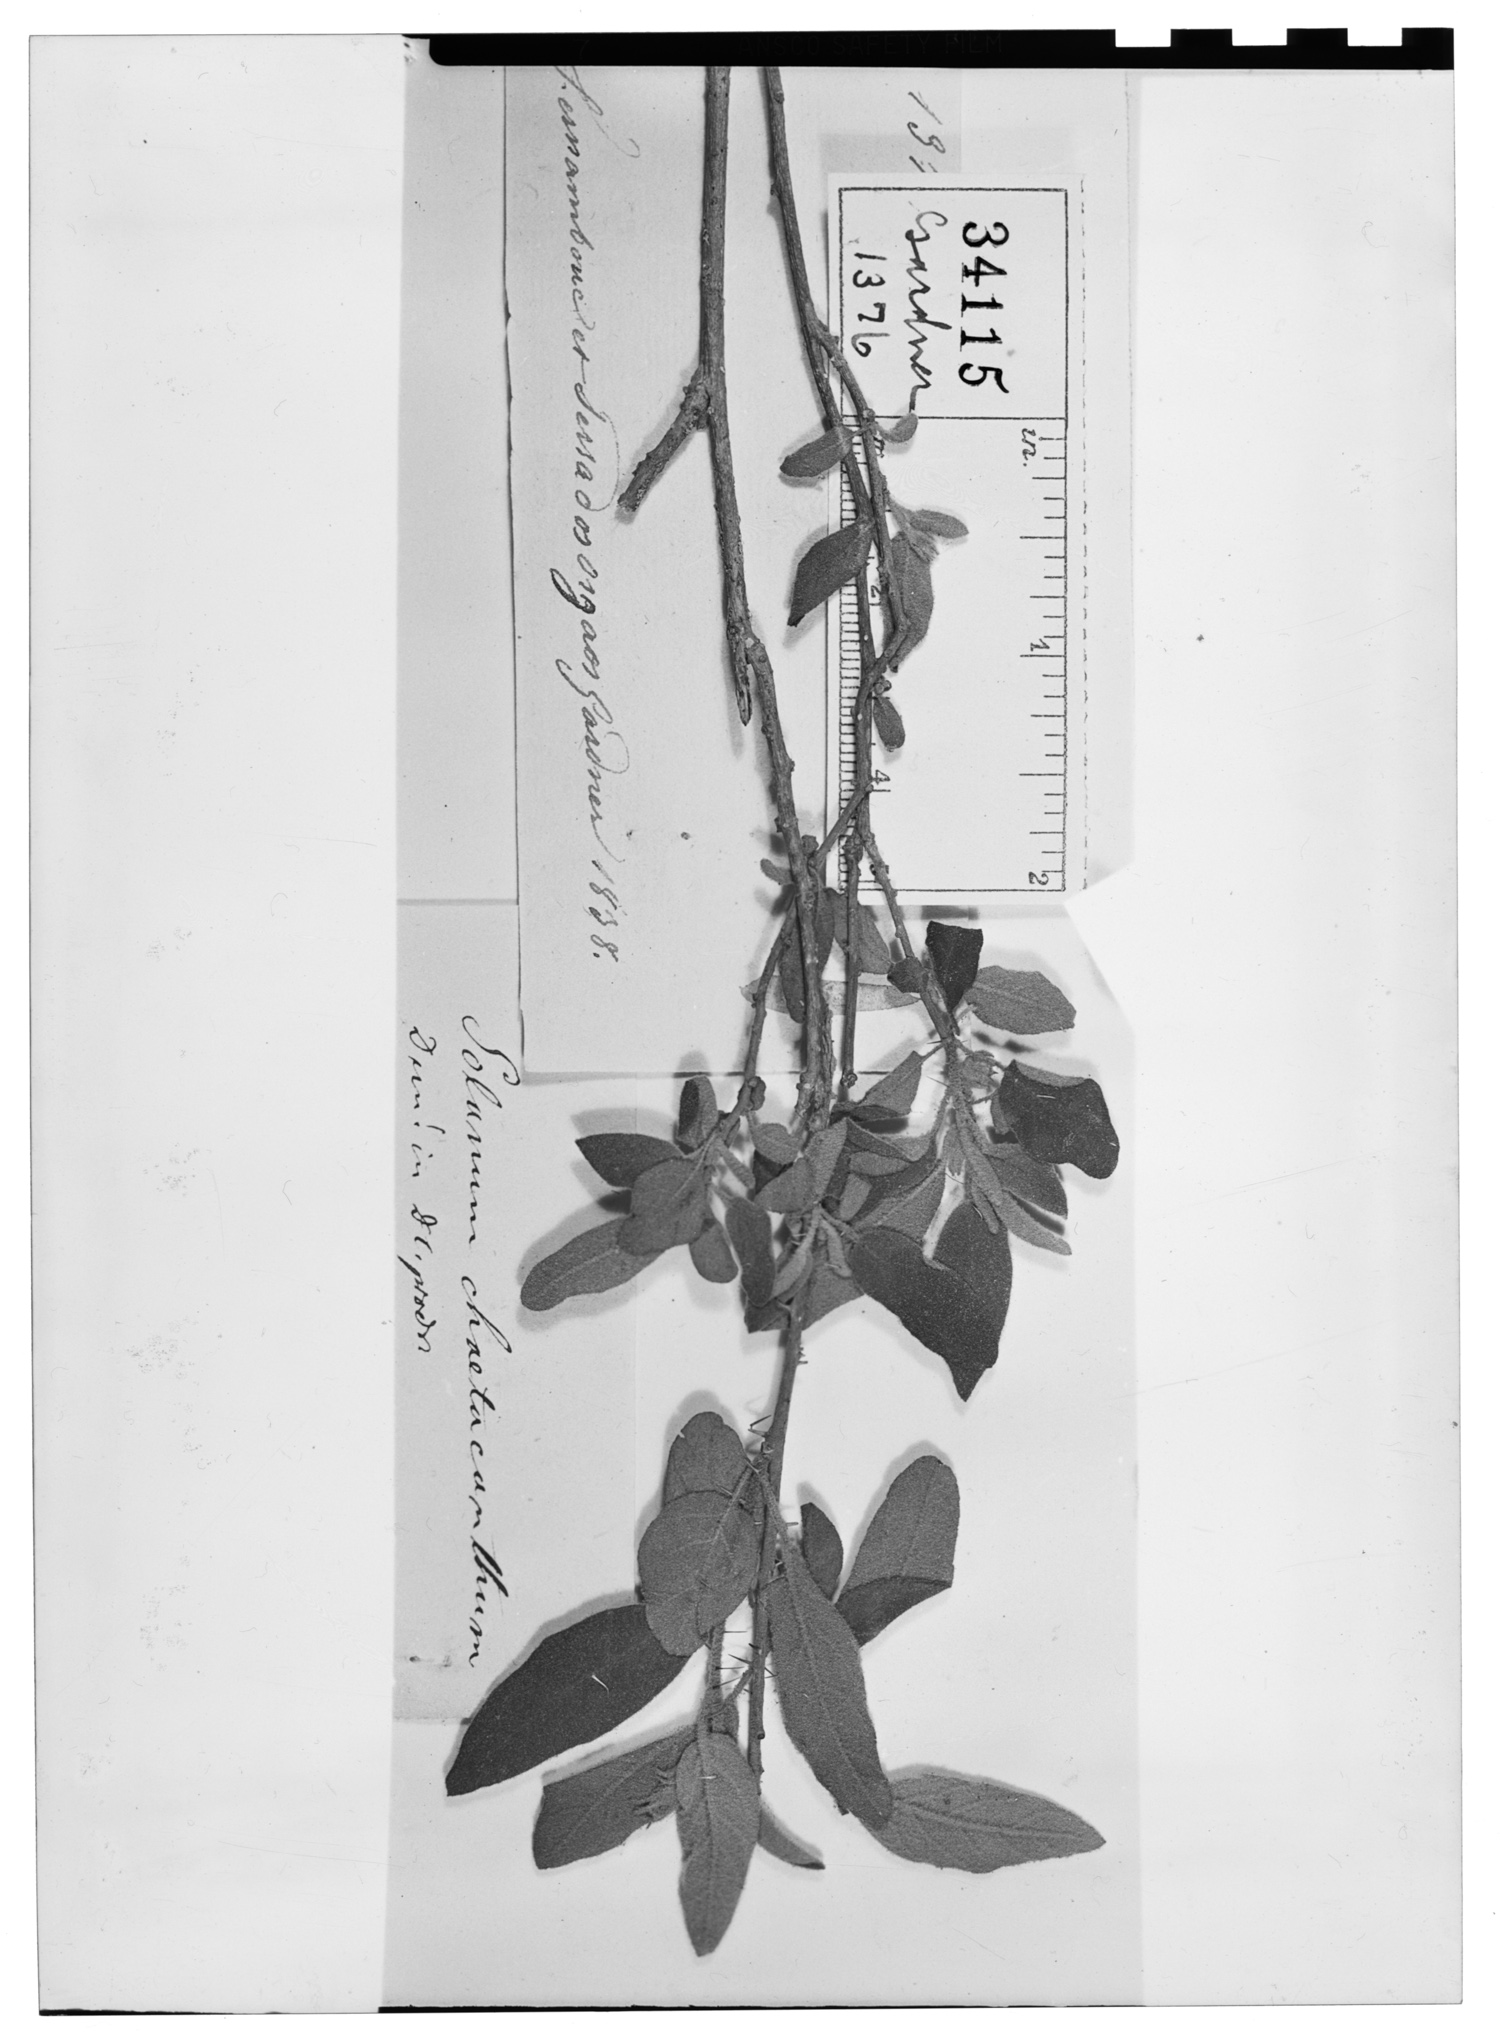 Solanum gardneri image